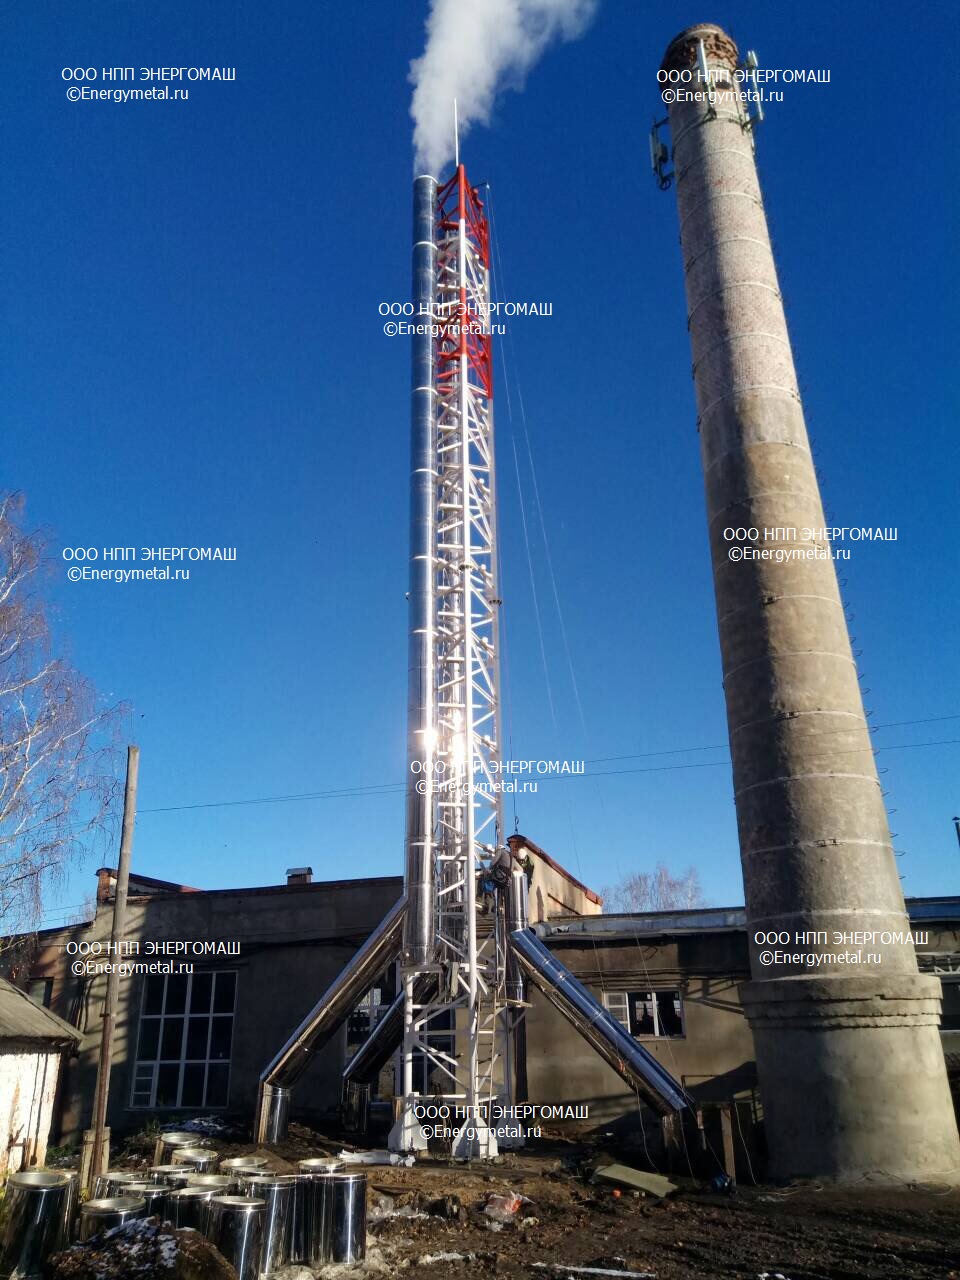 Дымовая труба, 25 метров - Ивановская область,г. Наволоки РФ.